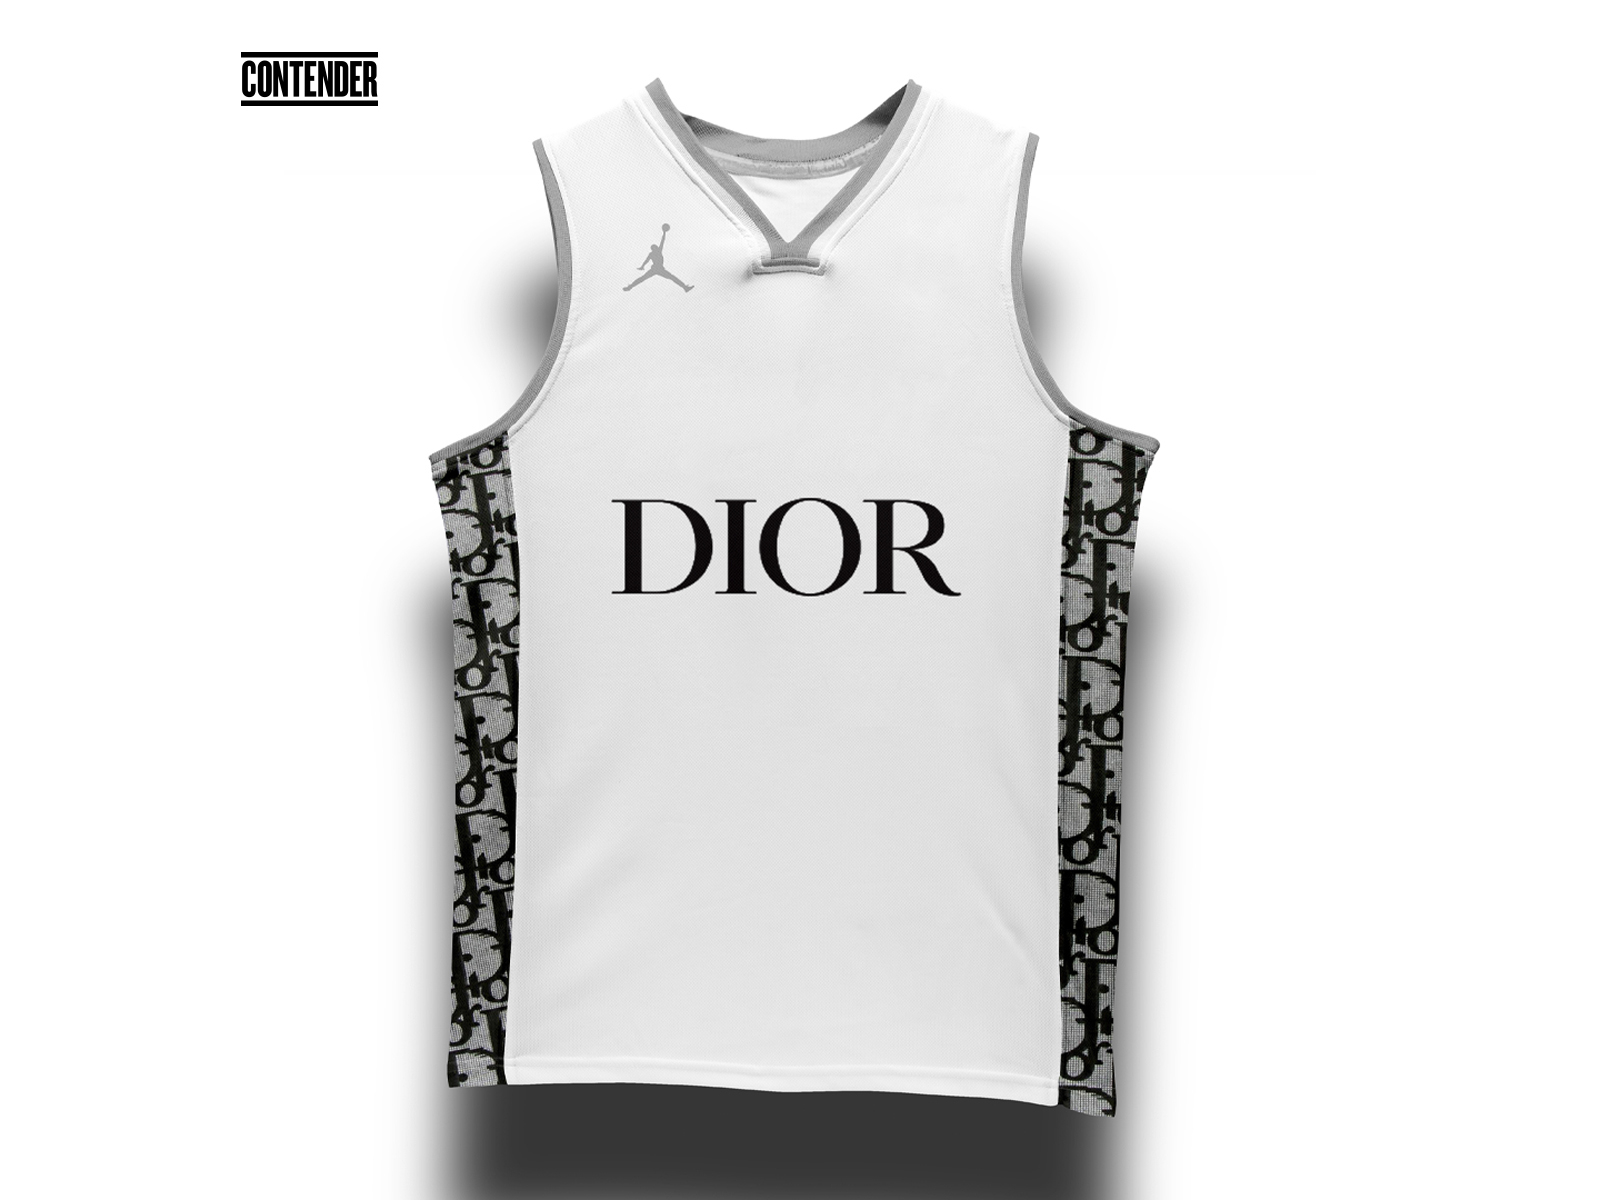 Dior, Shirts, Nike Dior Jersey